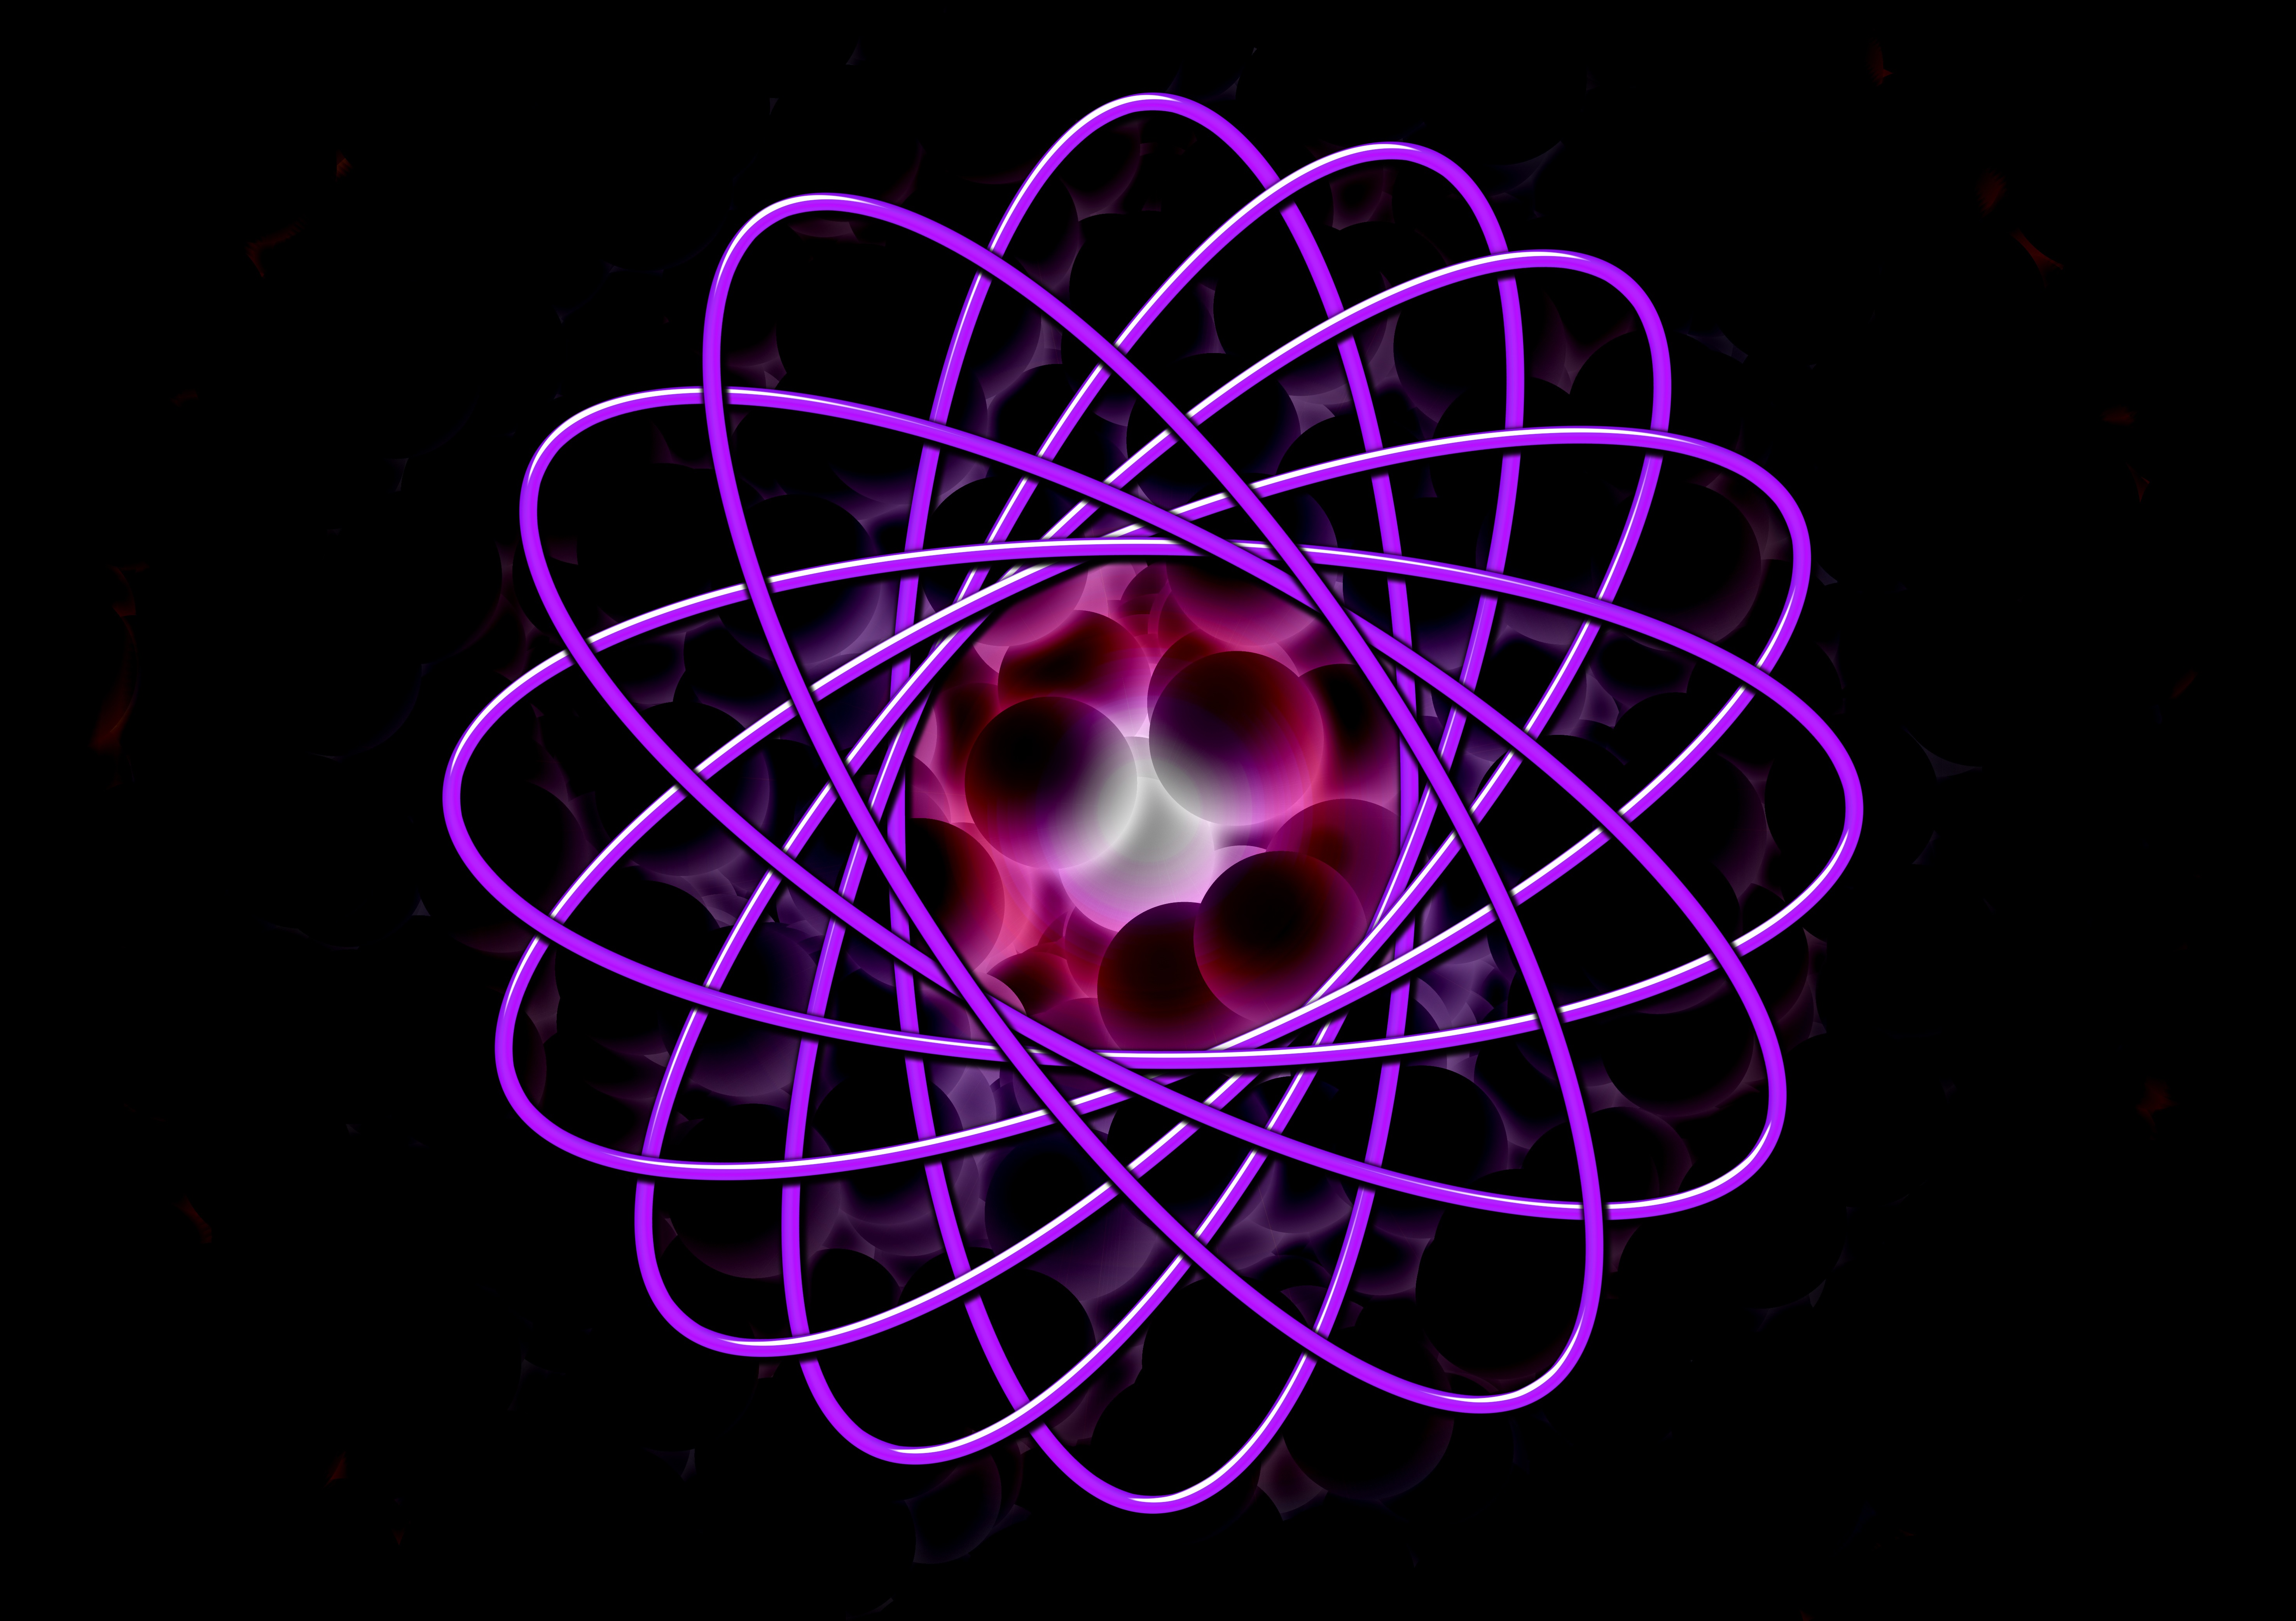 Atom electron neutron drawing free image download